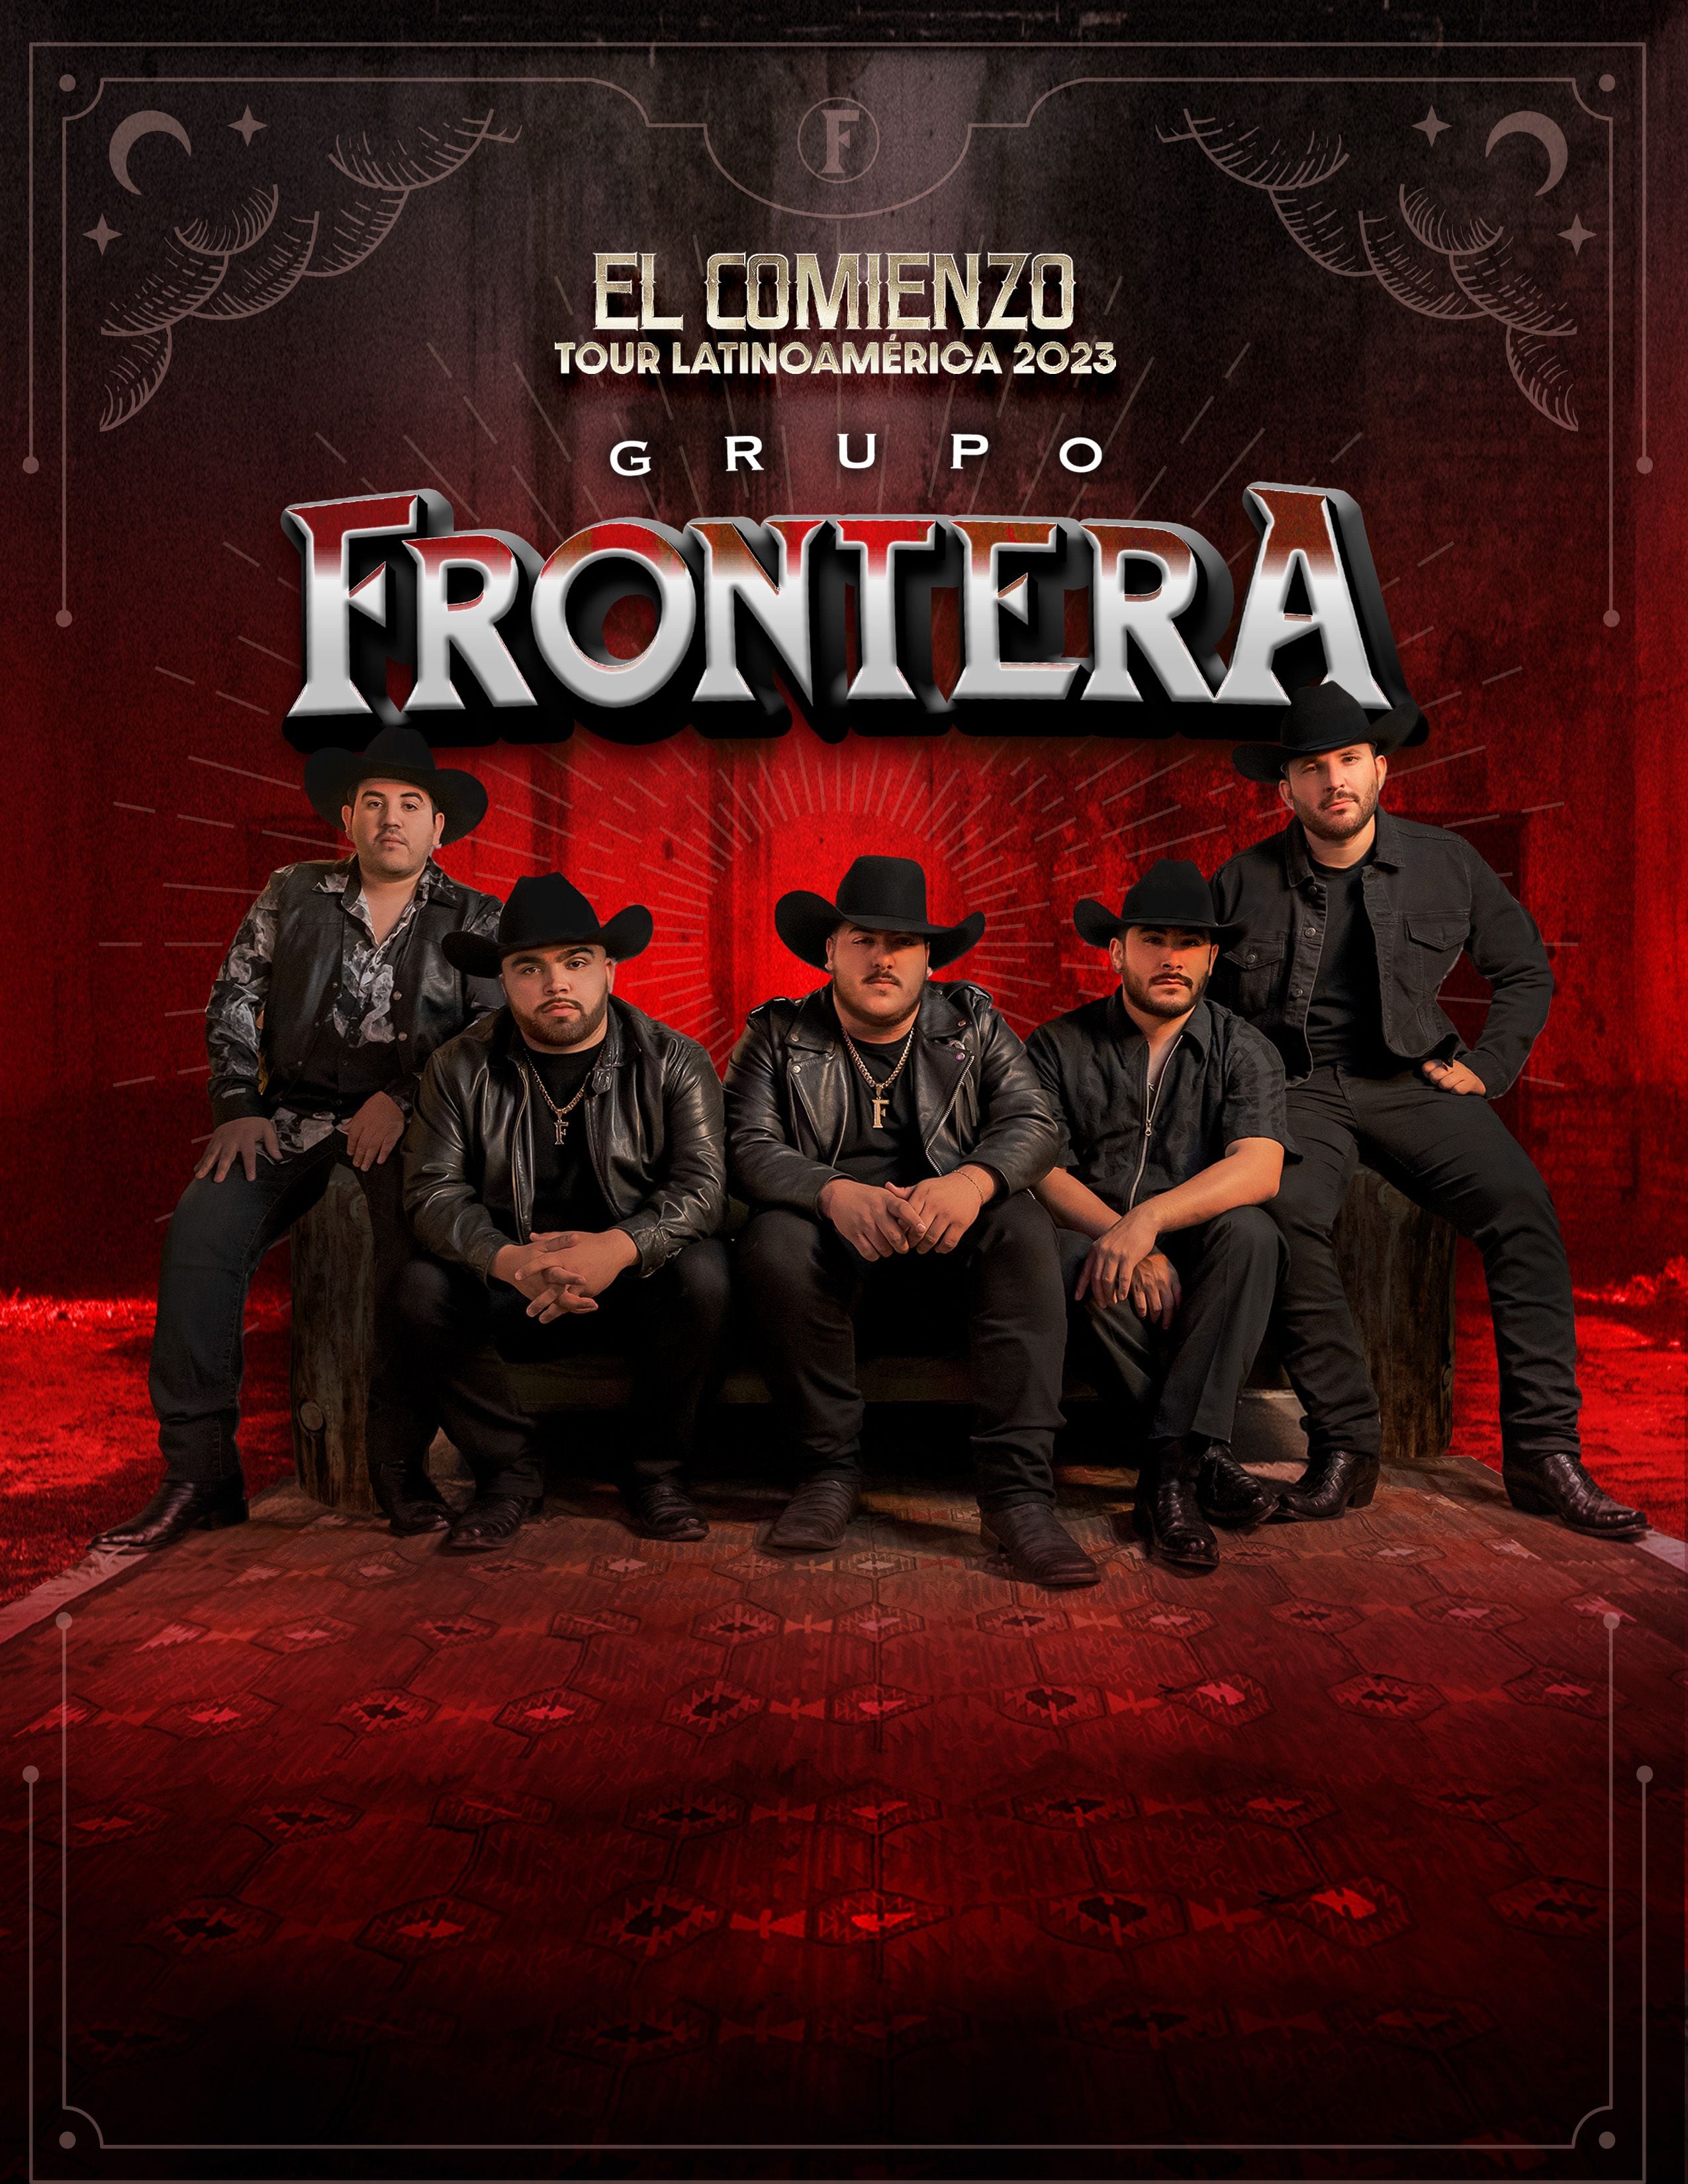 Oriundos de Texas, Estados Unidos, los de Grupo Frontera han conquistado a fans de todas las edades con su propuesta de música regional mexicana.